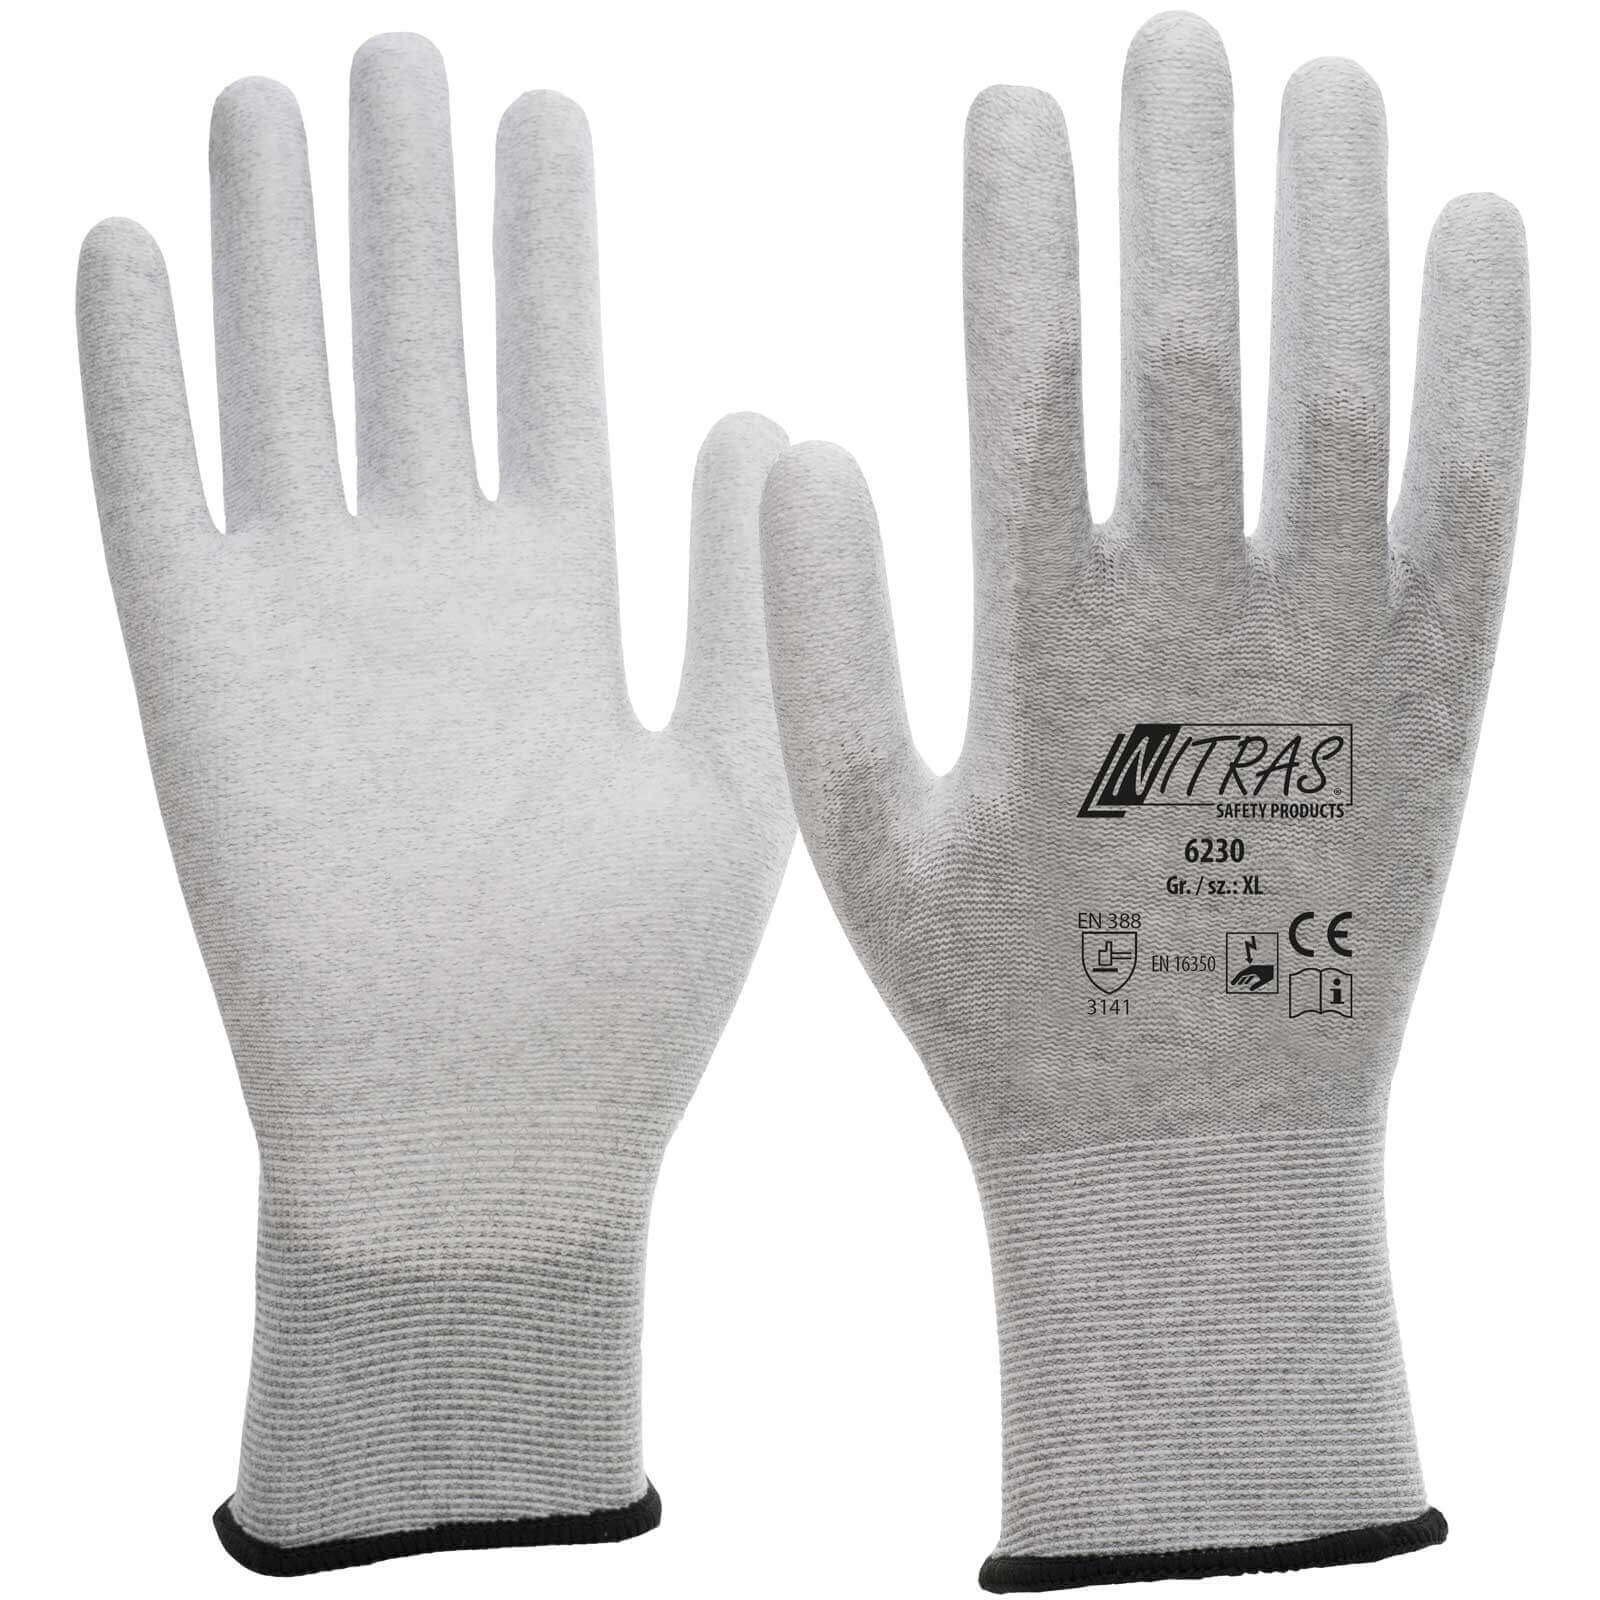 Nitras Mechaniker-Handschuhe 6230 ESD-Schutzhandschuhe - Touchscreen-fähig - VPE 240 Paar (Spar-Set)